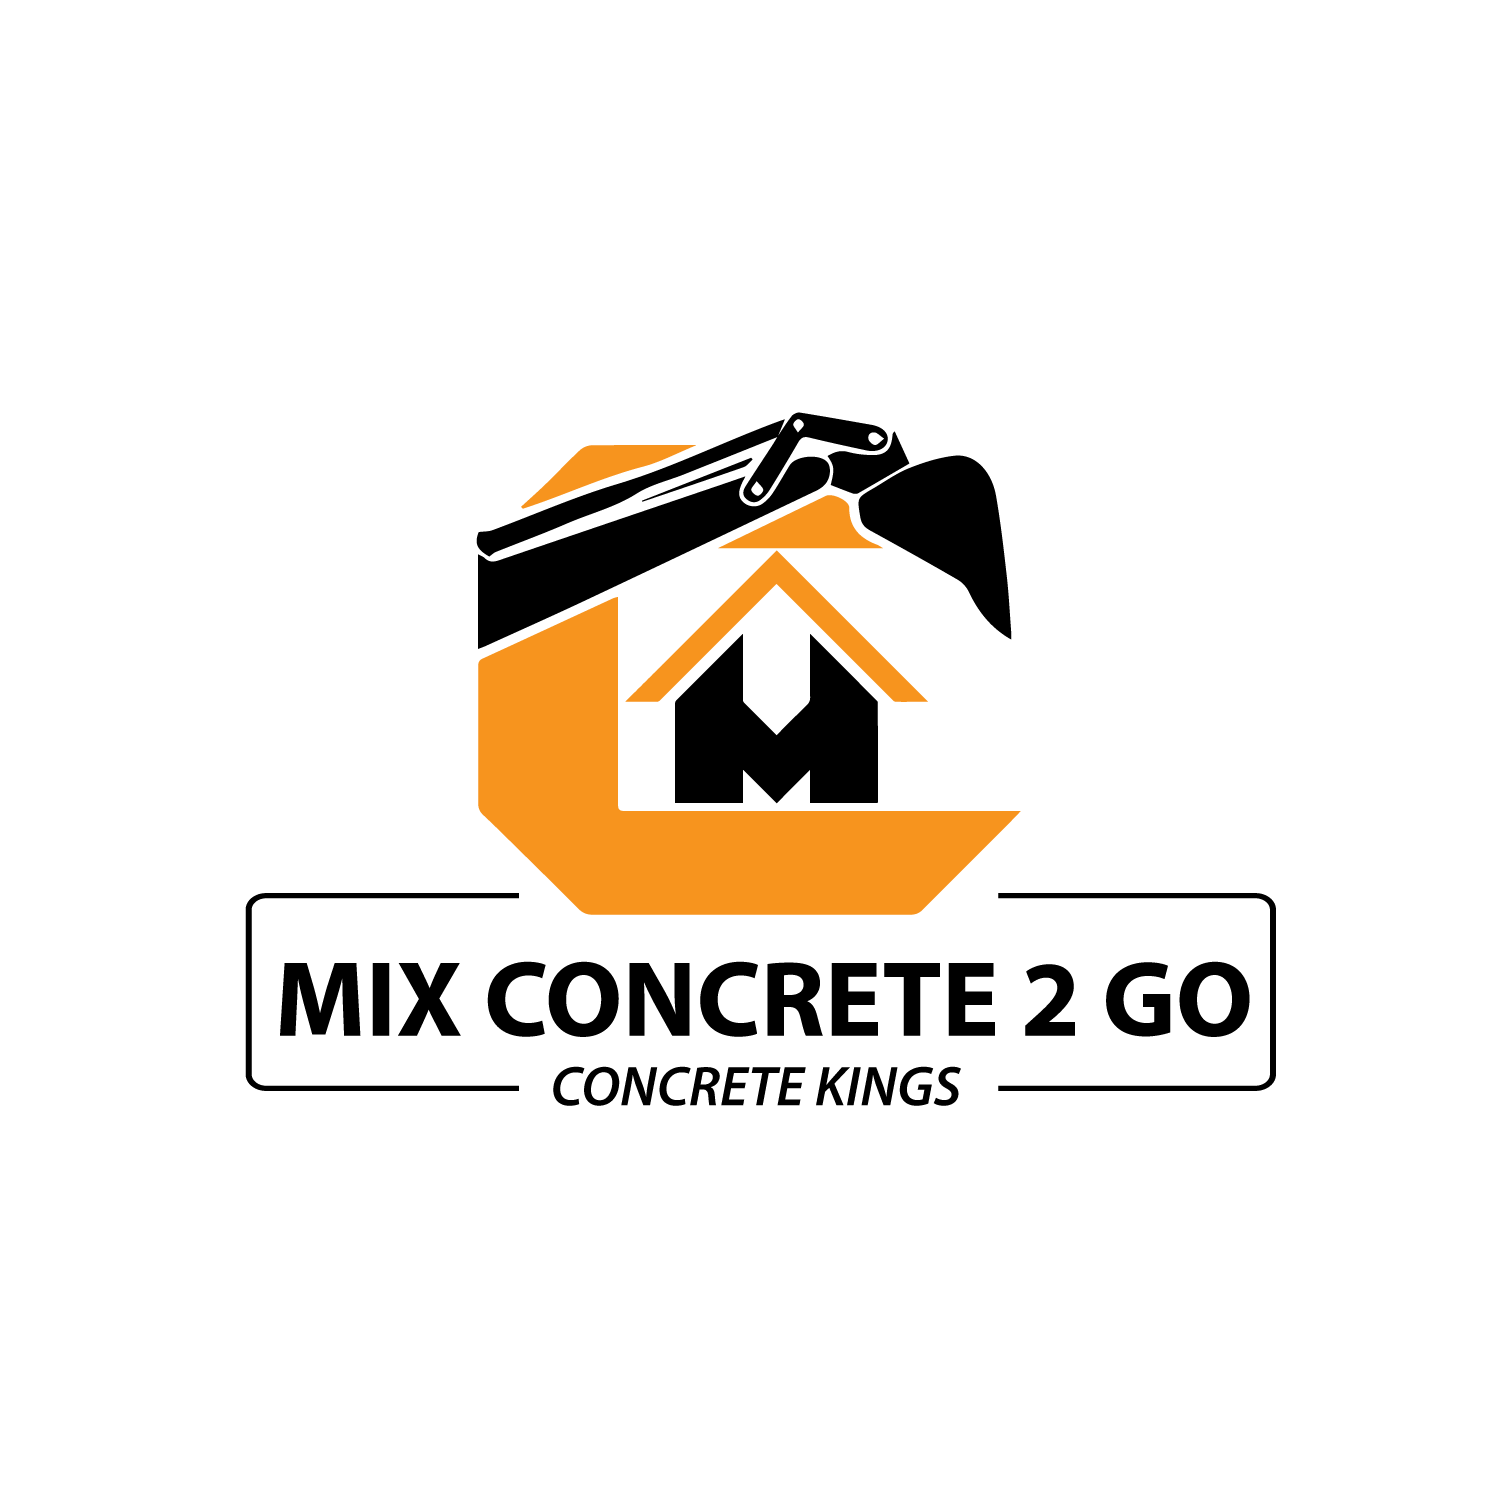 Mix Concrete 2 Go.2 - Services